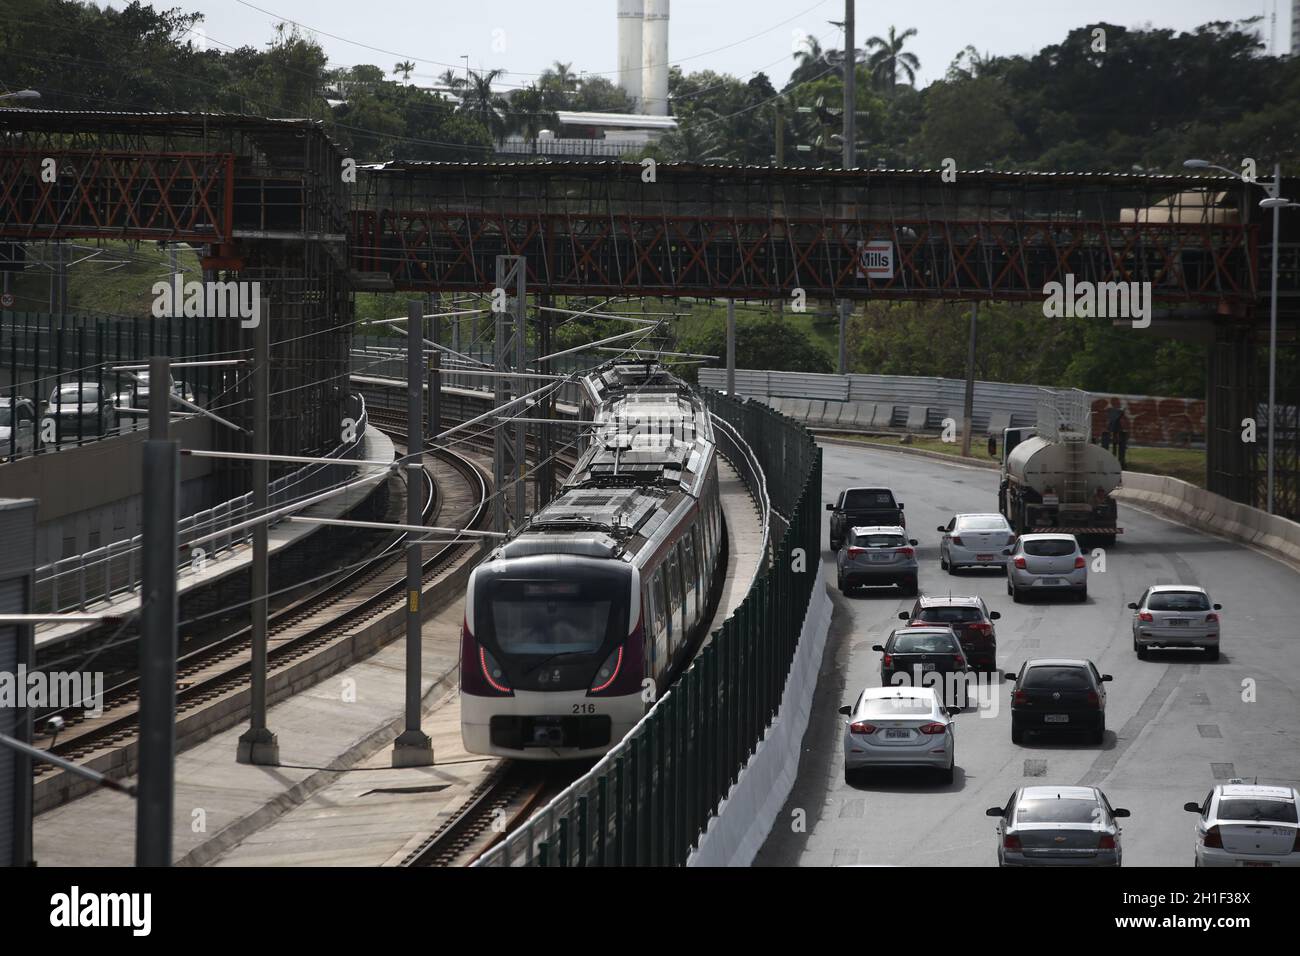 salvador, bahia / brasile - 2 ottobre 2017: Composizione del treno metropolitano Salvador visto vicino alla stazione di Pernambues. *** Local Caption *** Foto Stock